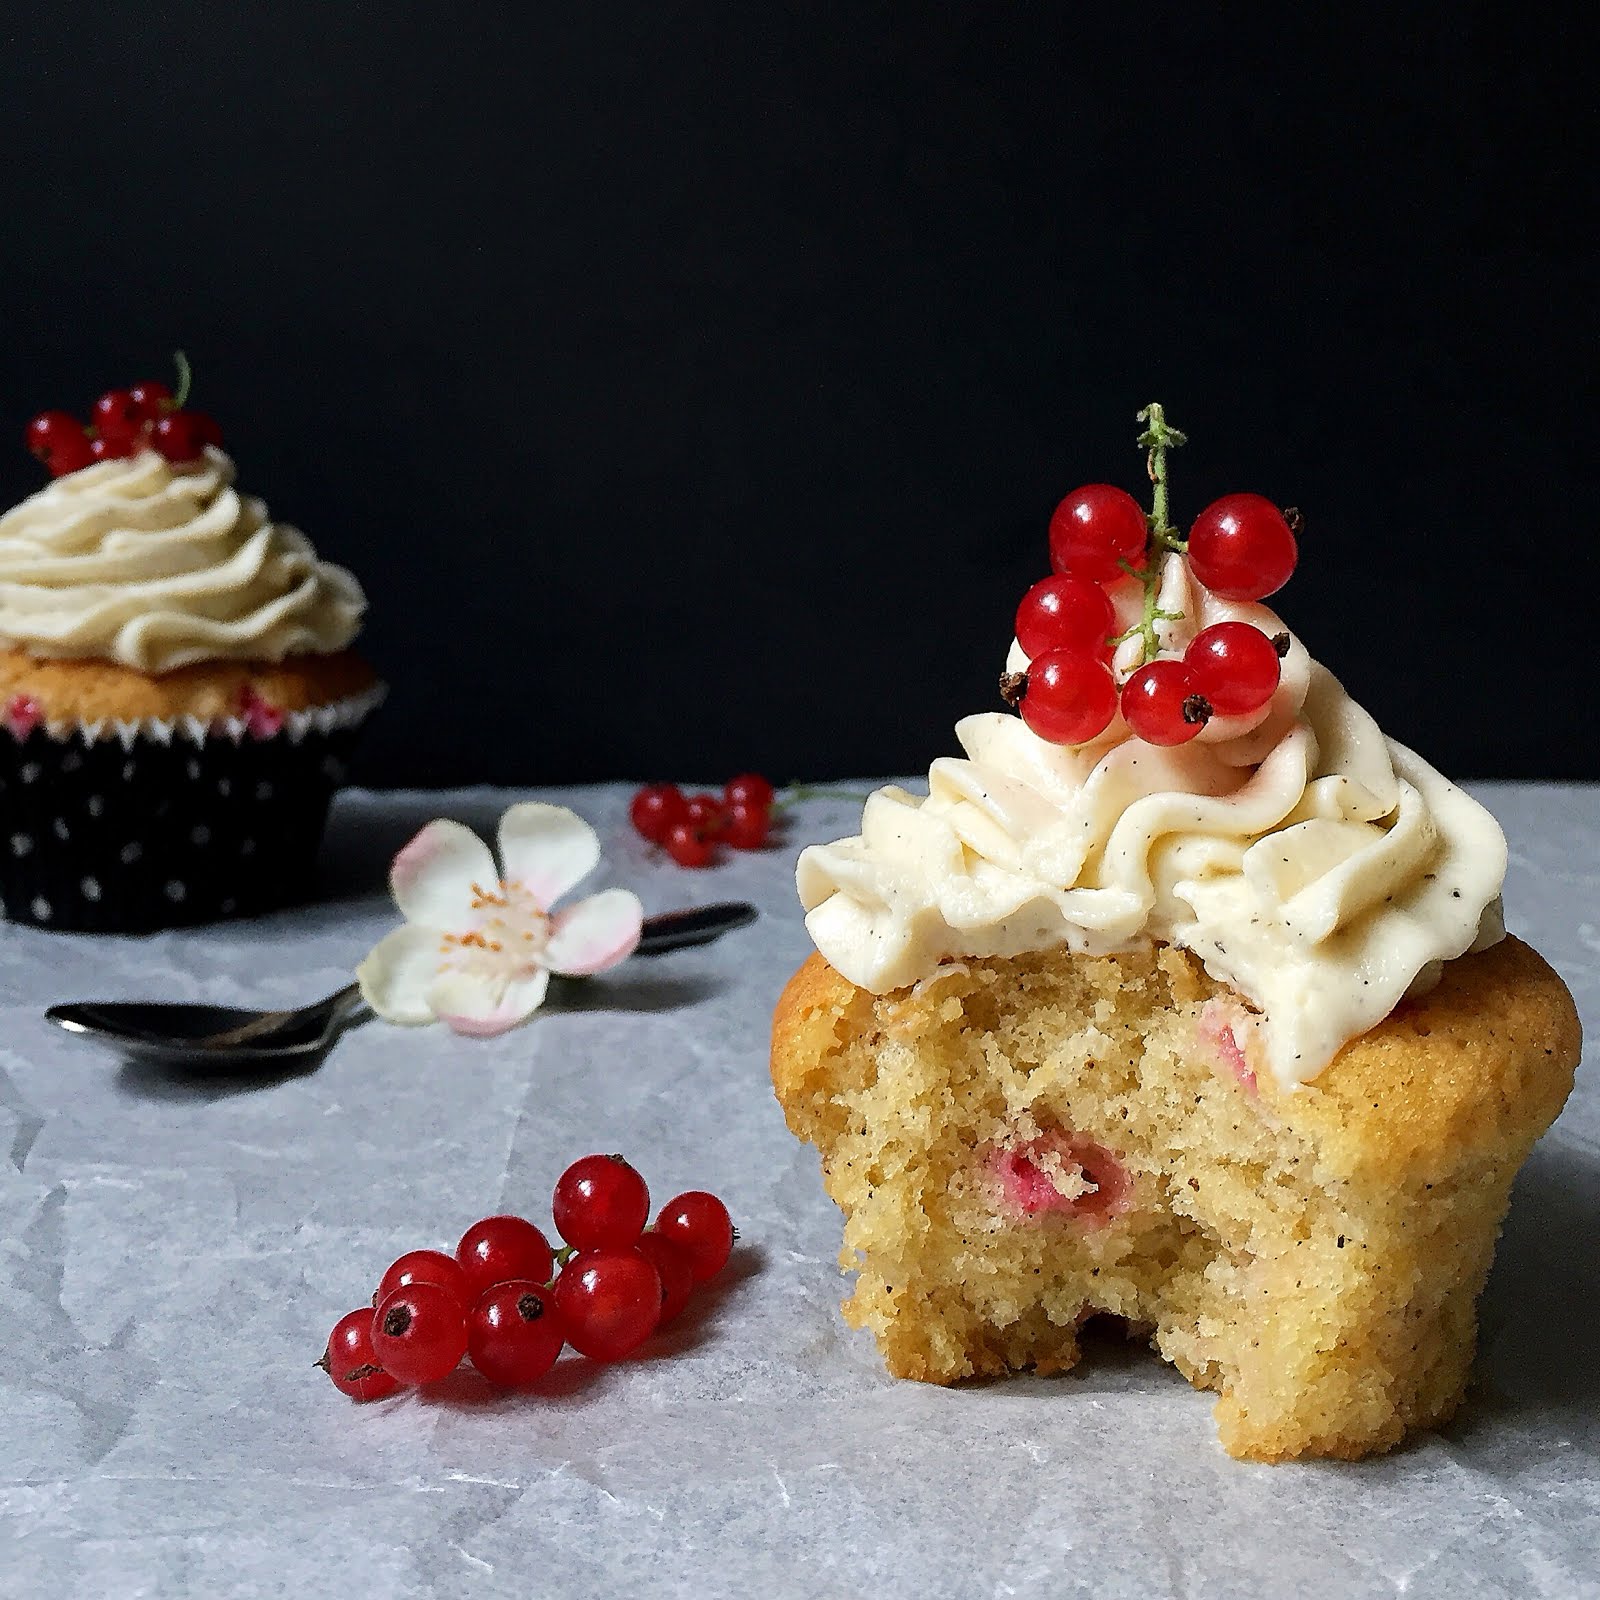 Hidden Sweet Treats: Johannisbeer-Cupcakes mit weisser Schokolade